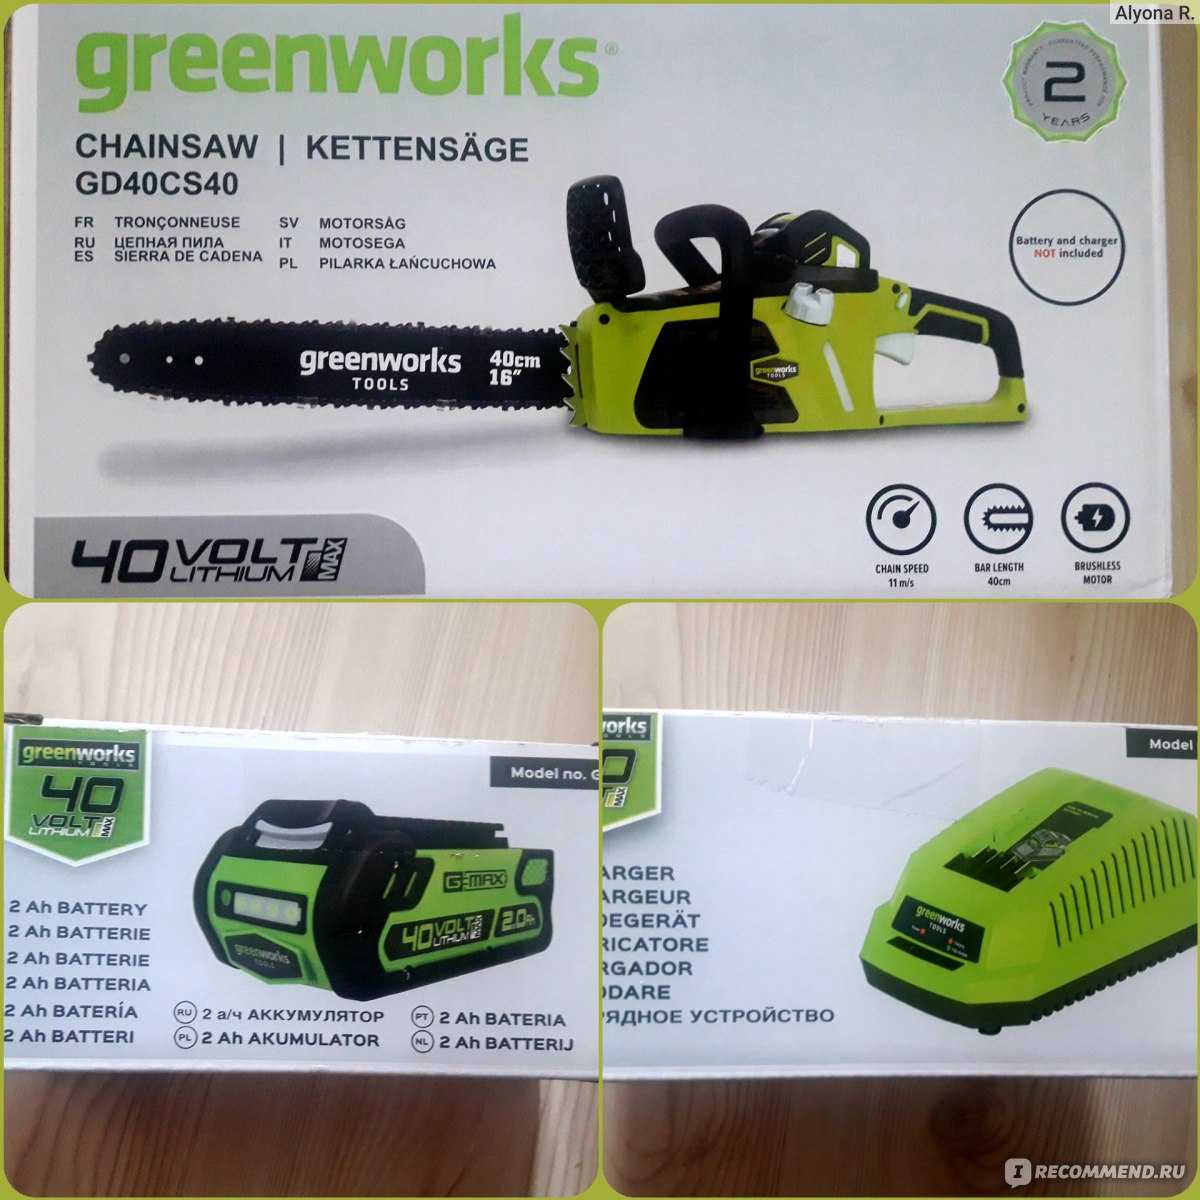 Greenworks 21277 230V 30cm Deluxe - короткий но максимально информативный обзор Для большего удобства добавлены характеристики отзывы и видео